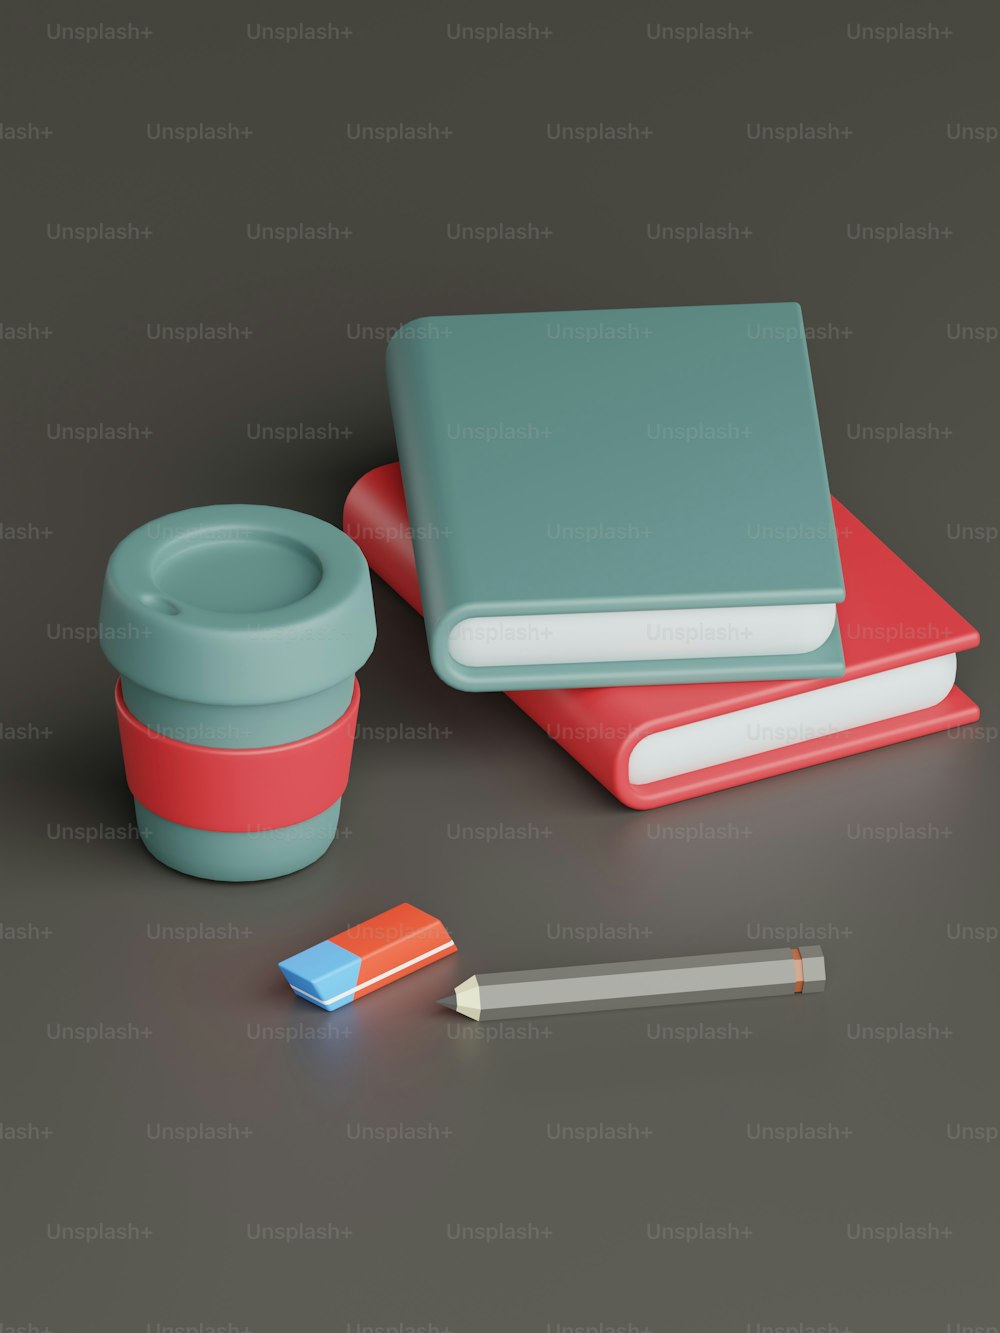 탁자 위의 책 더미, 컵, 연필